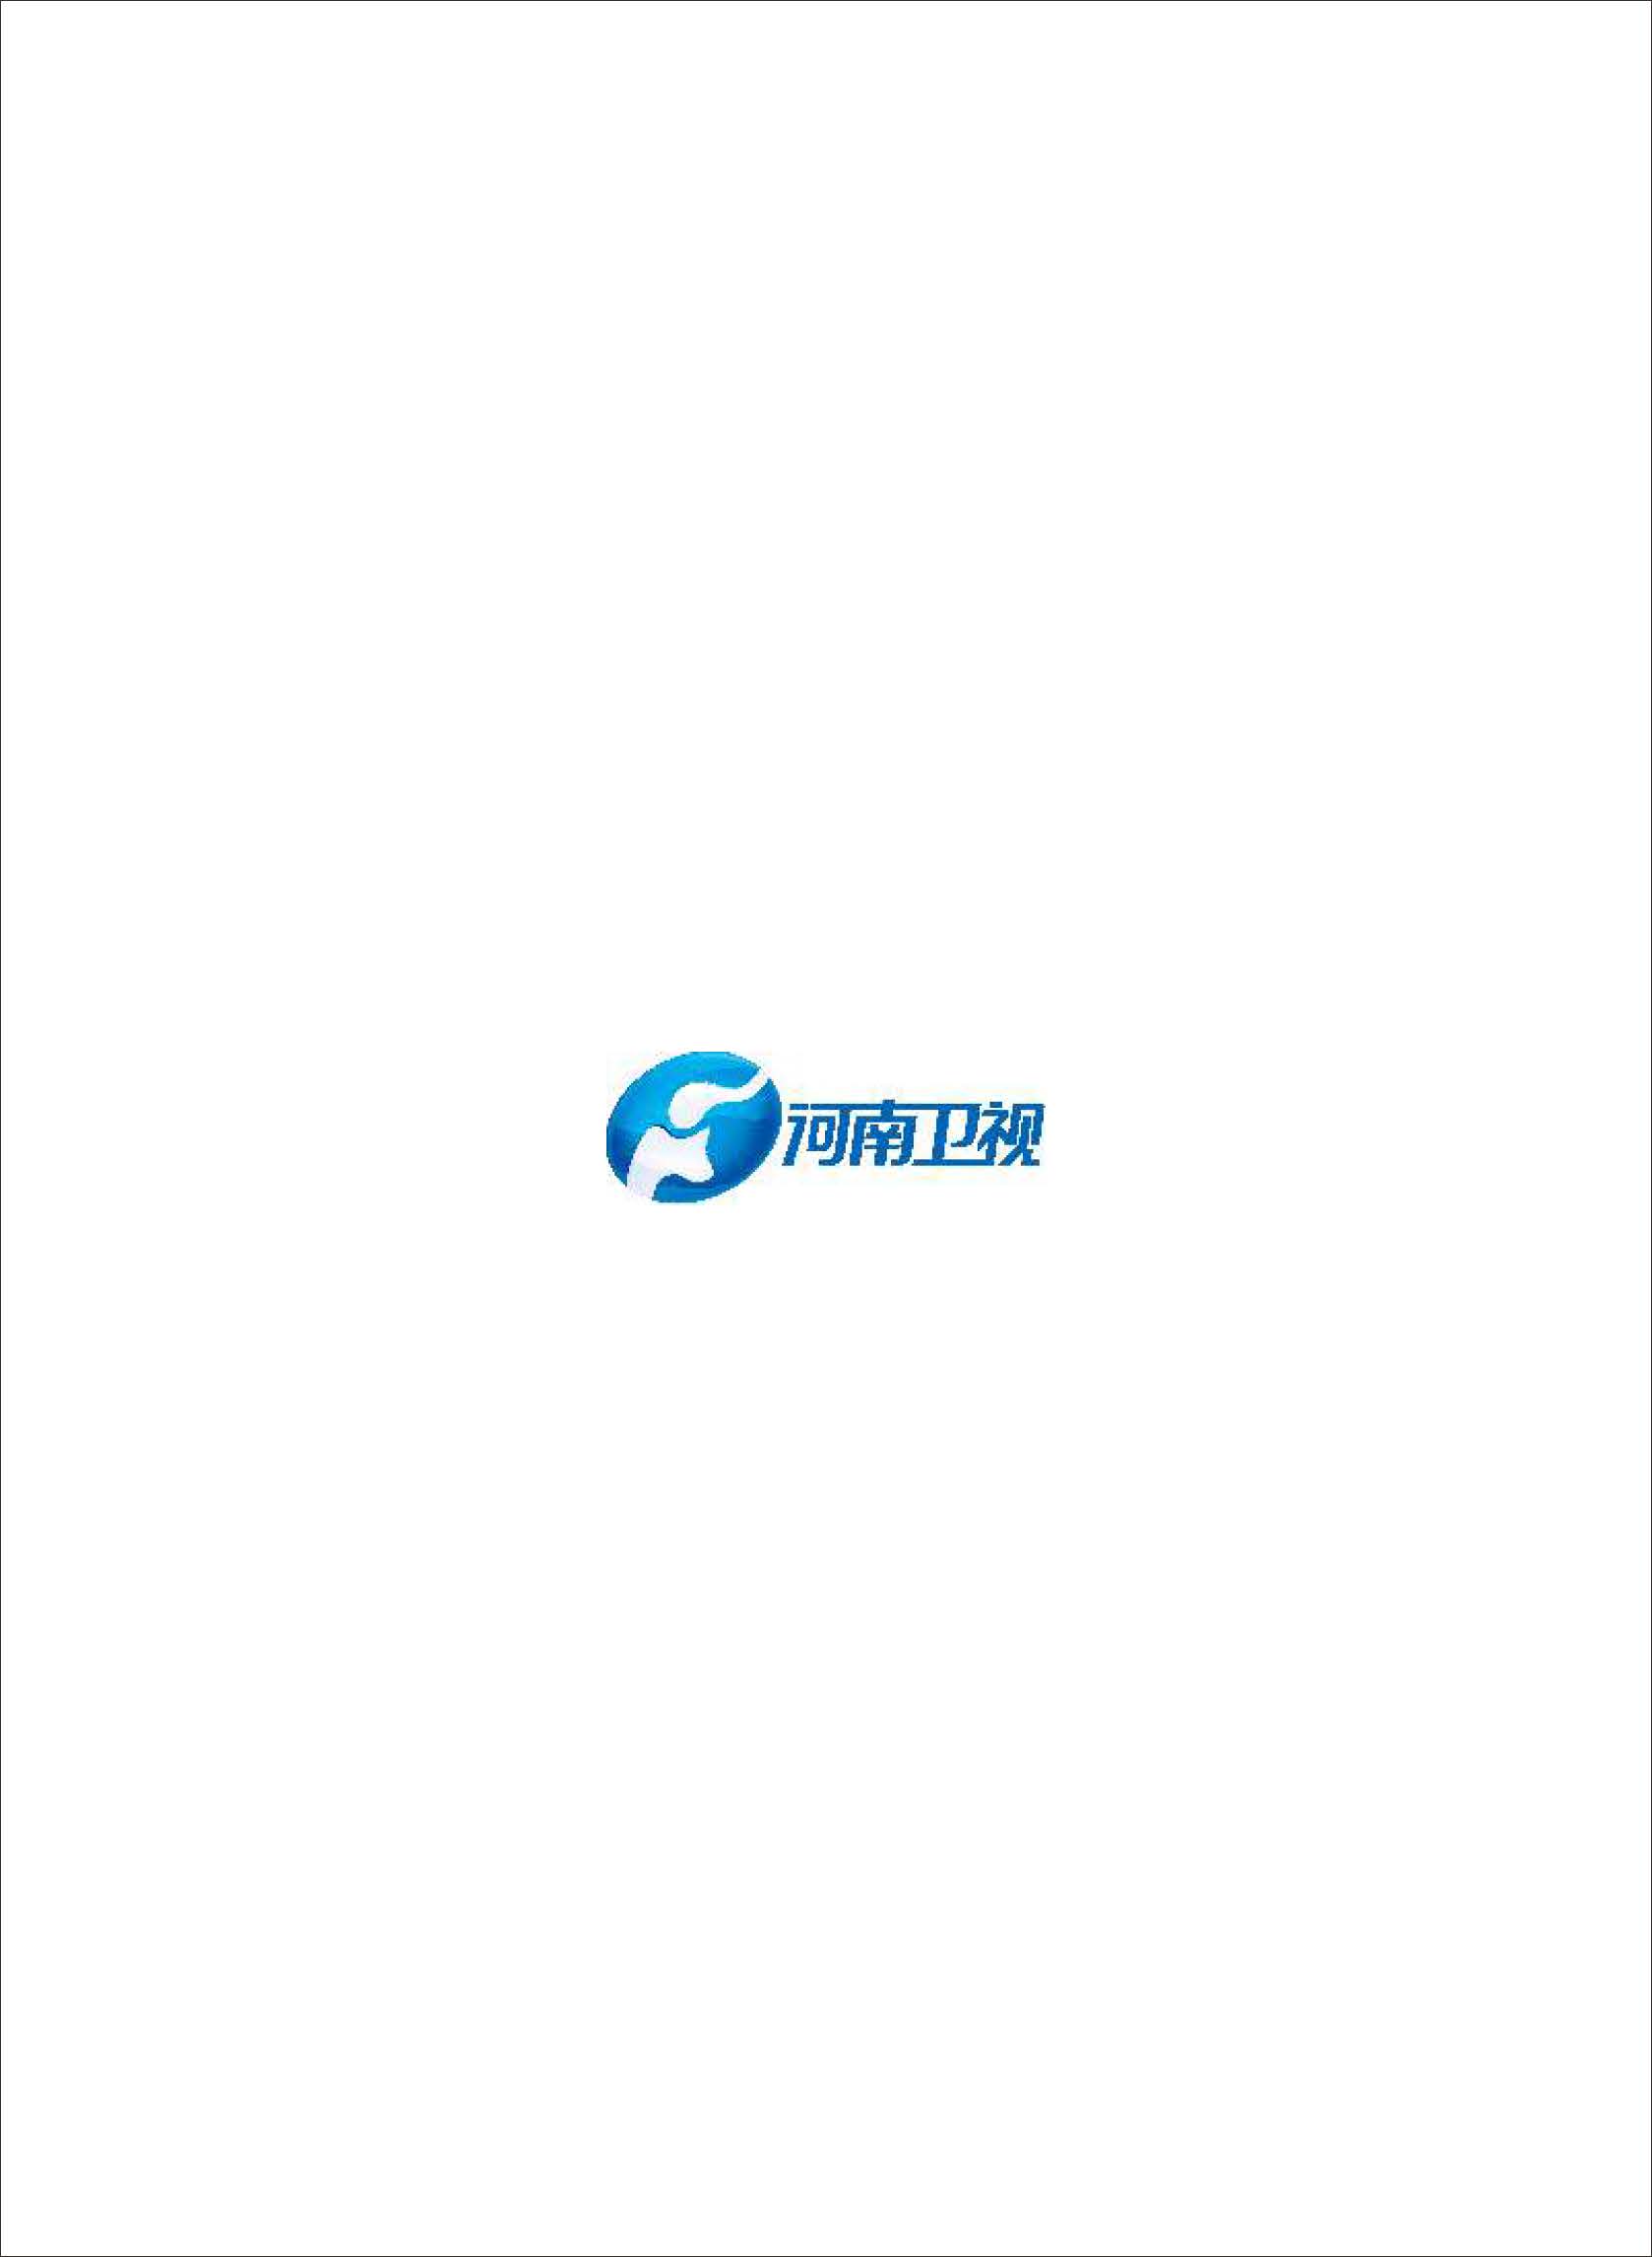 招商手册2020_页面_49.jpg